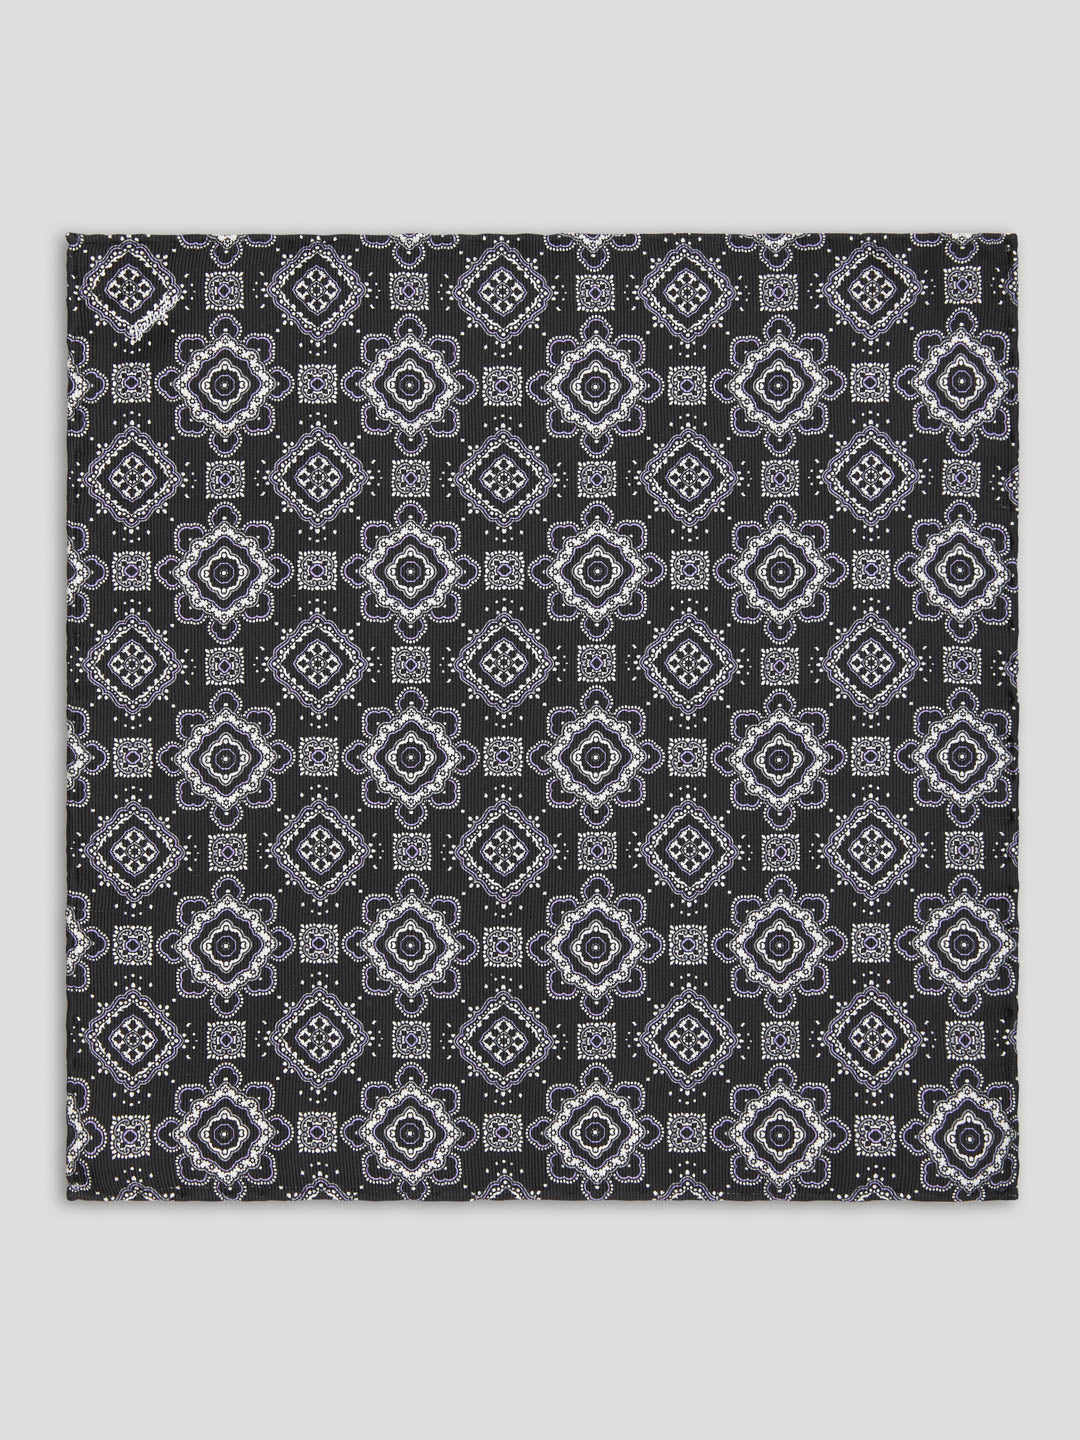 Black, grey, and silver paisley handkerchief. 